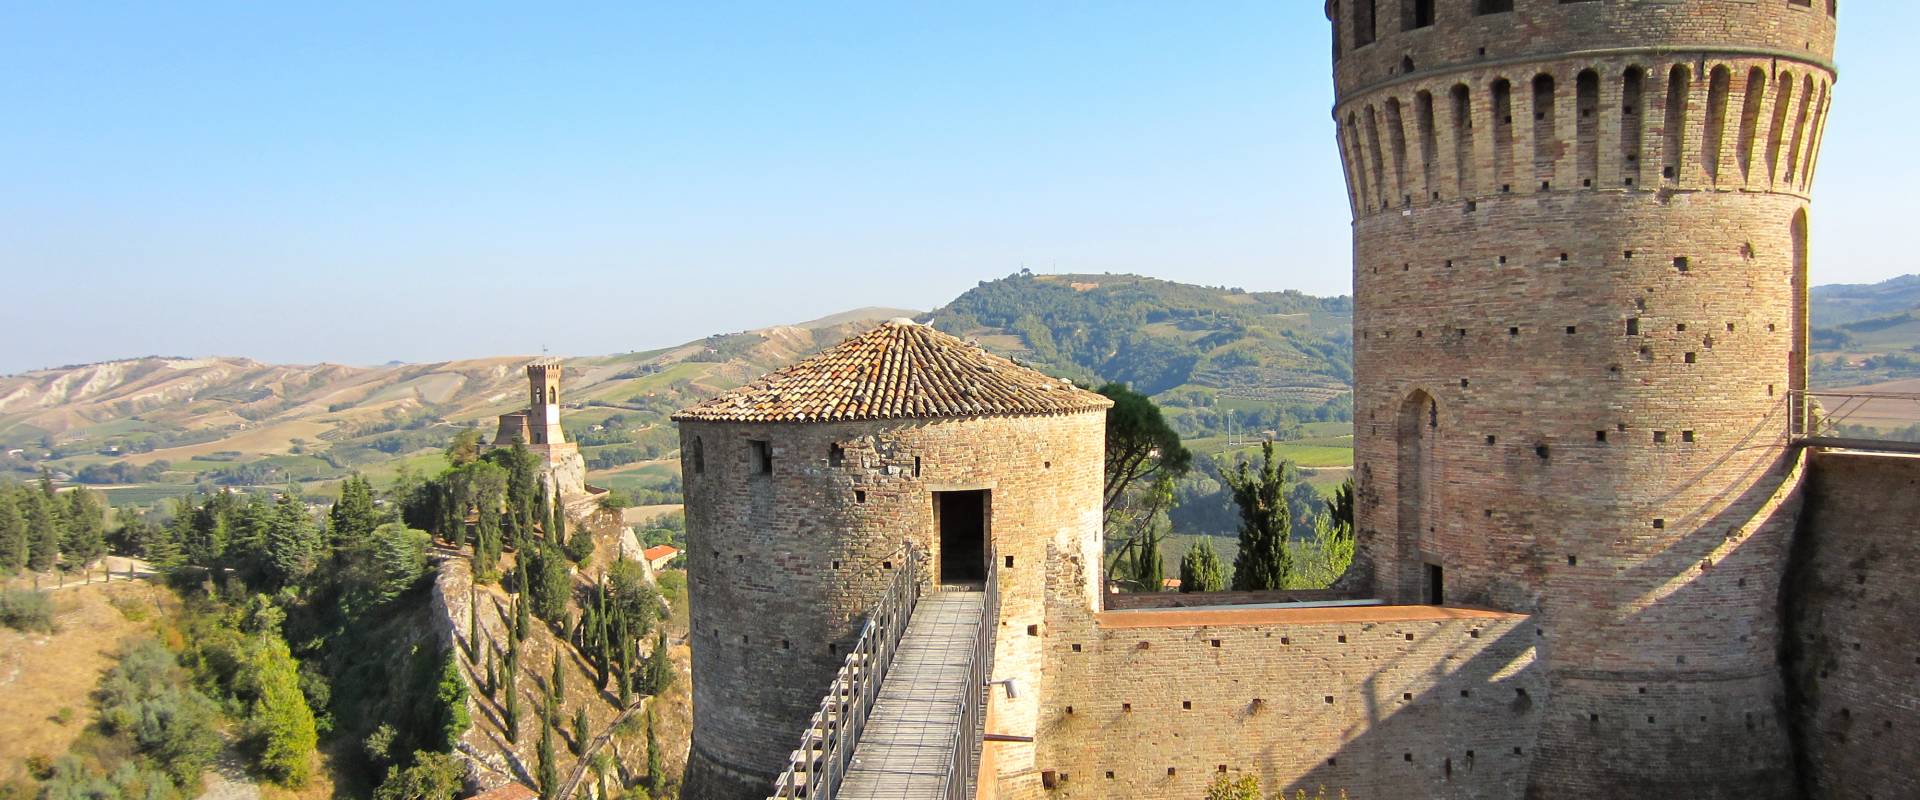 Rocca di Brisighella foto di Laghi Daniela